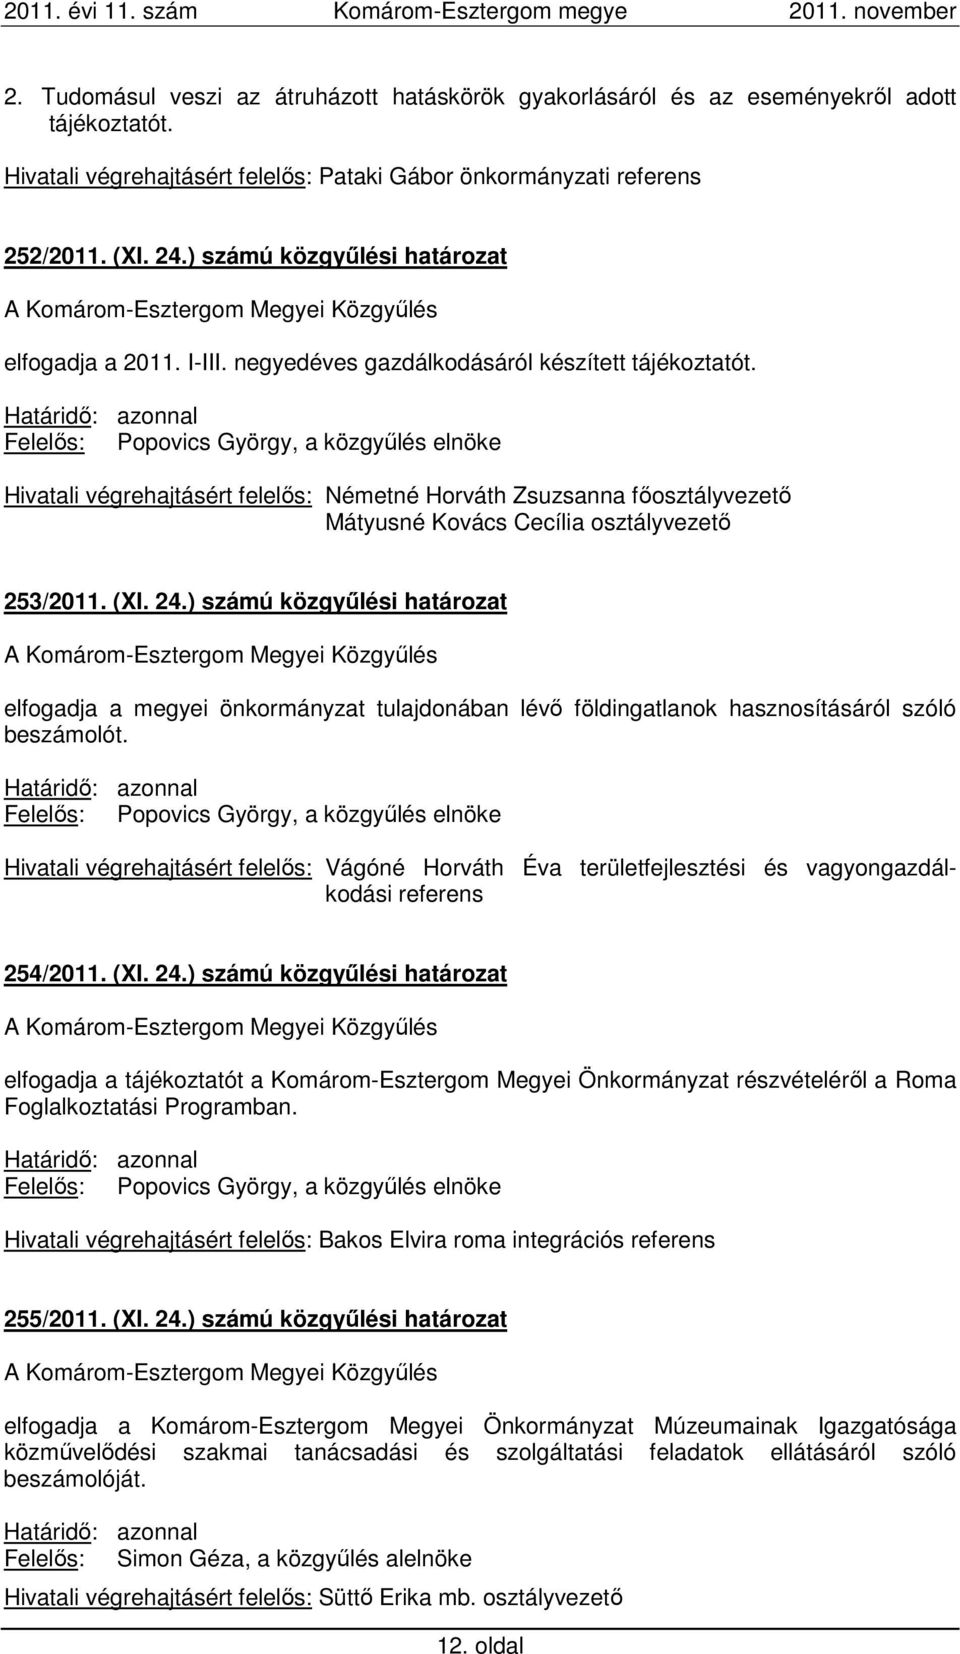 Határidő: azonnal Hivatali végrehajtásért felelős: Németné Horváth Zsuzsanna főosztályvezető Mátyusné Kovács Cecília osztályvezető 253/2011. (XI. 24.